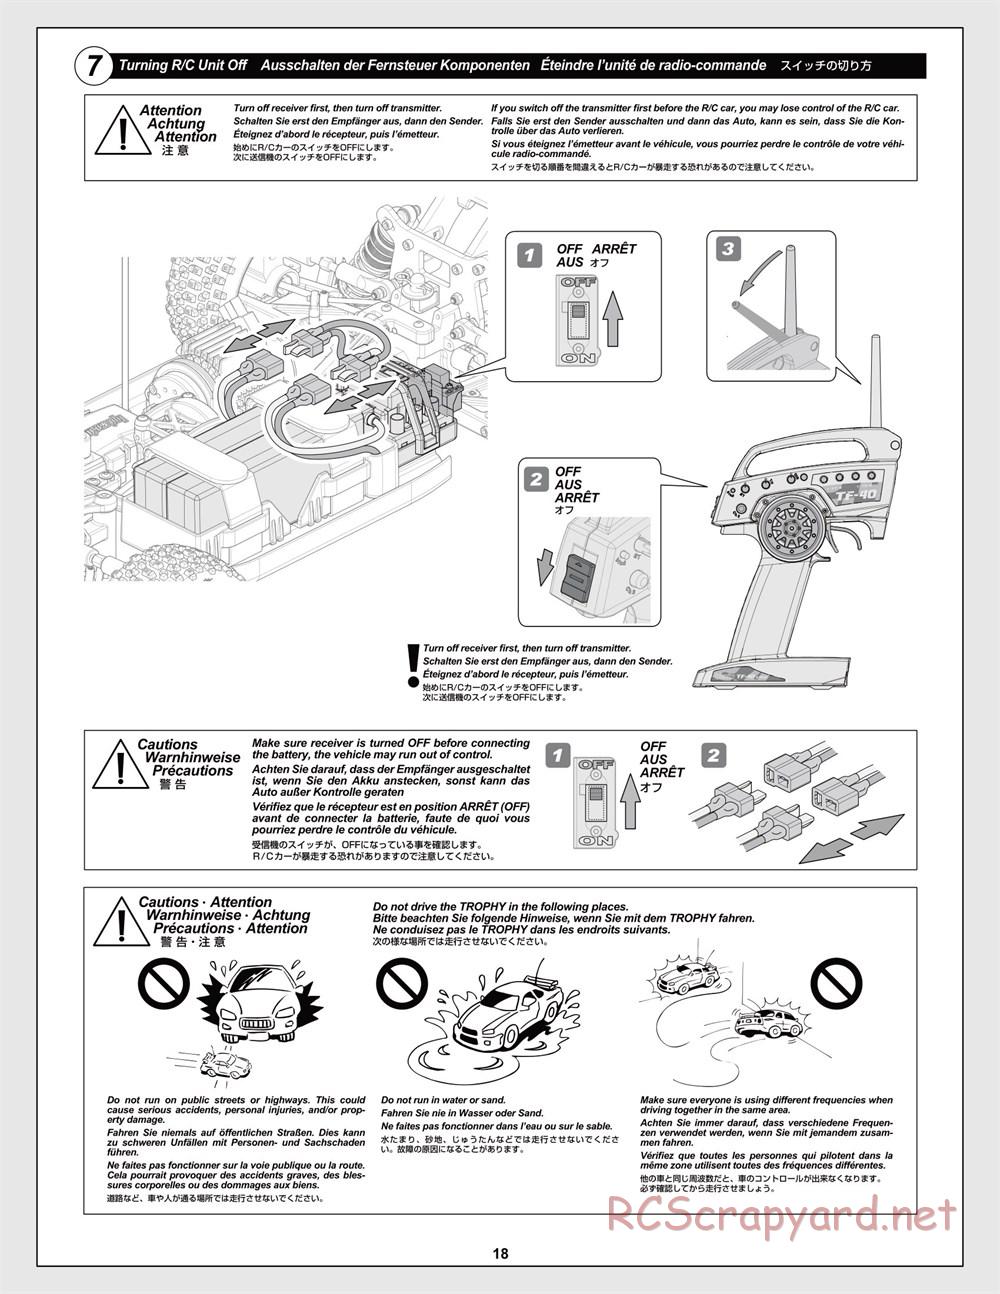 HPI - Trophy Flux Buggy - Manual - Page 18